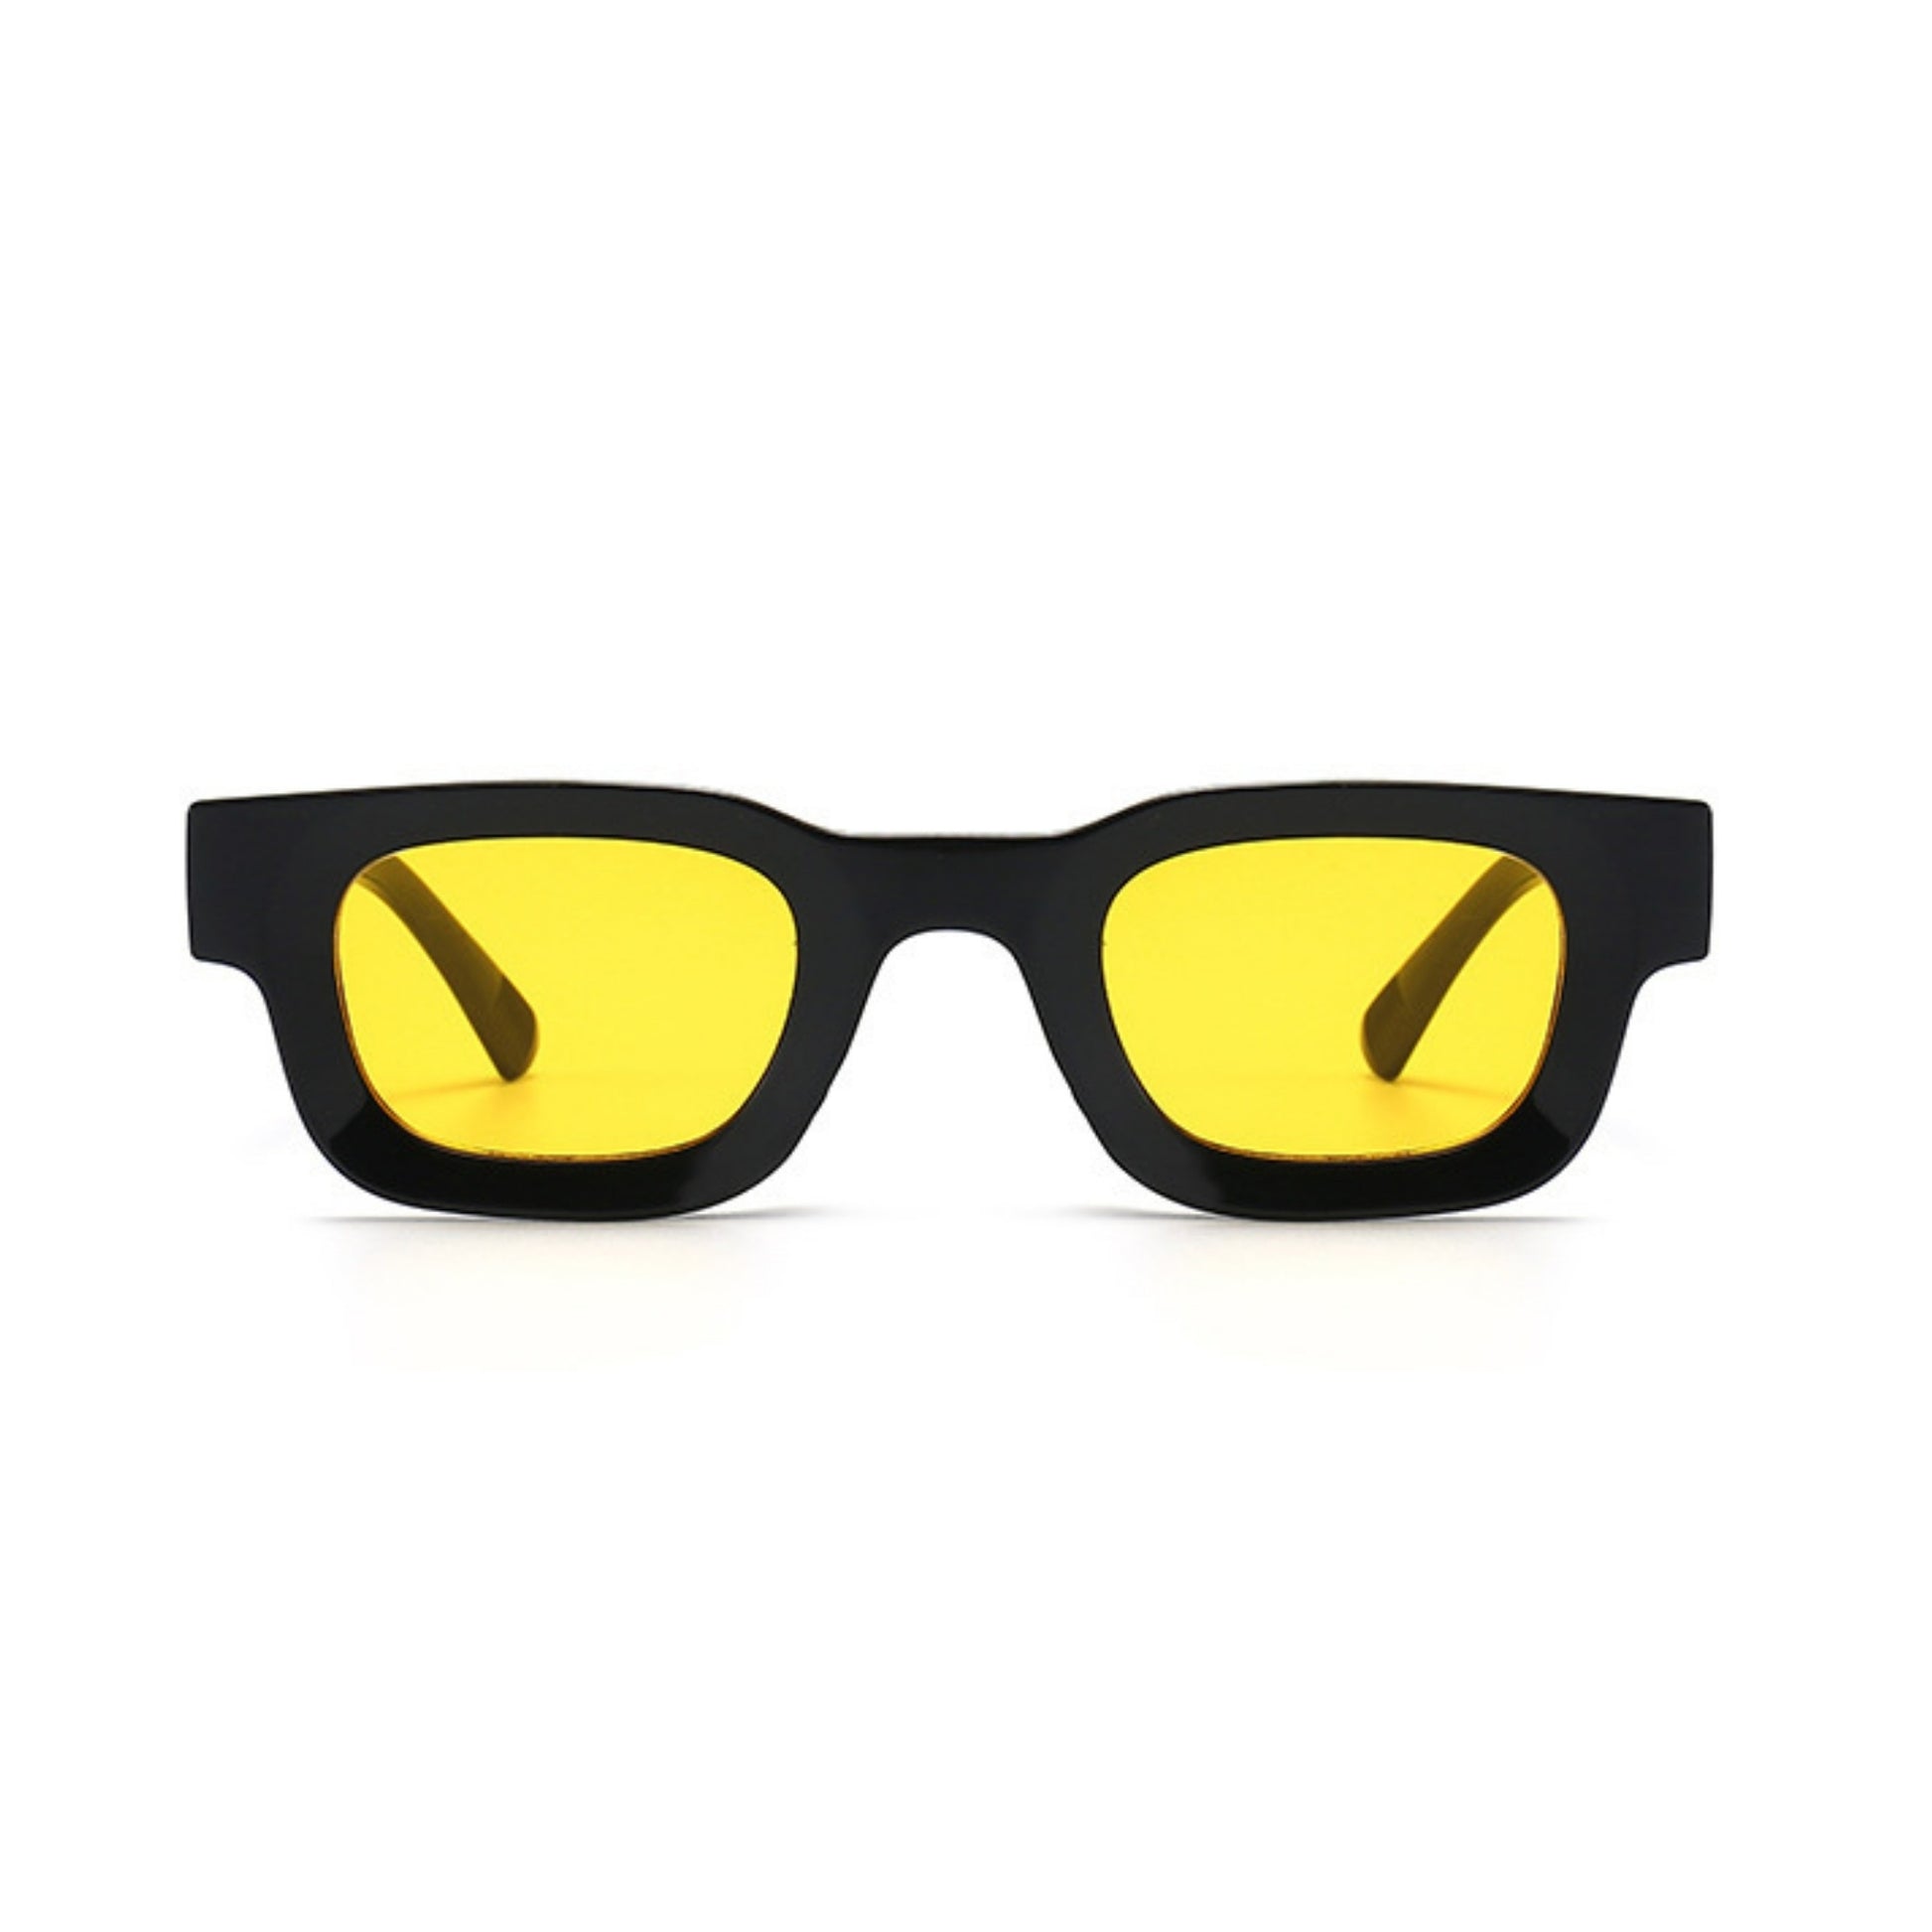 Τετράγωνα Γυαλιά ηλίου Taf από την Exposure Sunglasses με προστασία UV400 με μαύρο σκελετό και κίτρινο φακό.